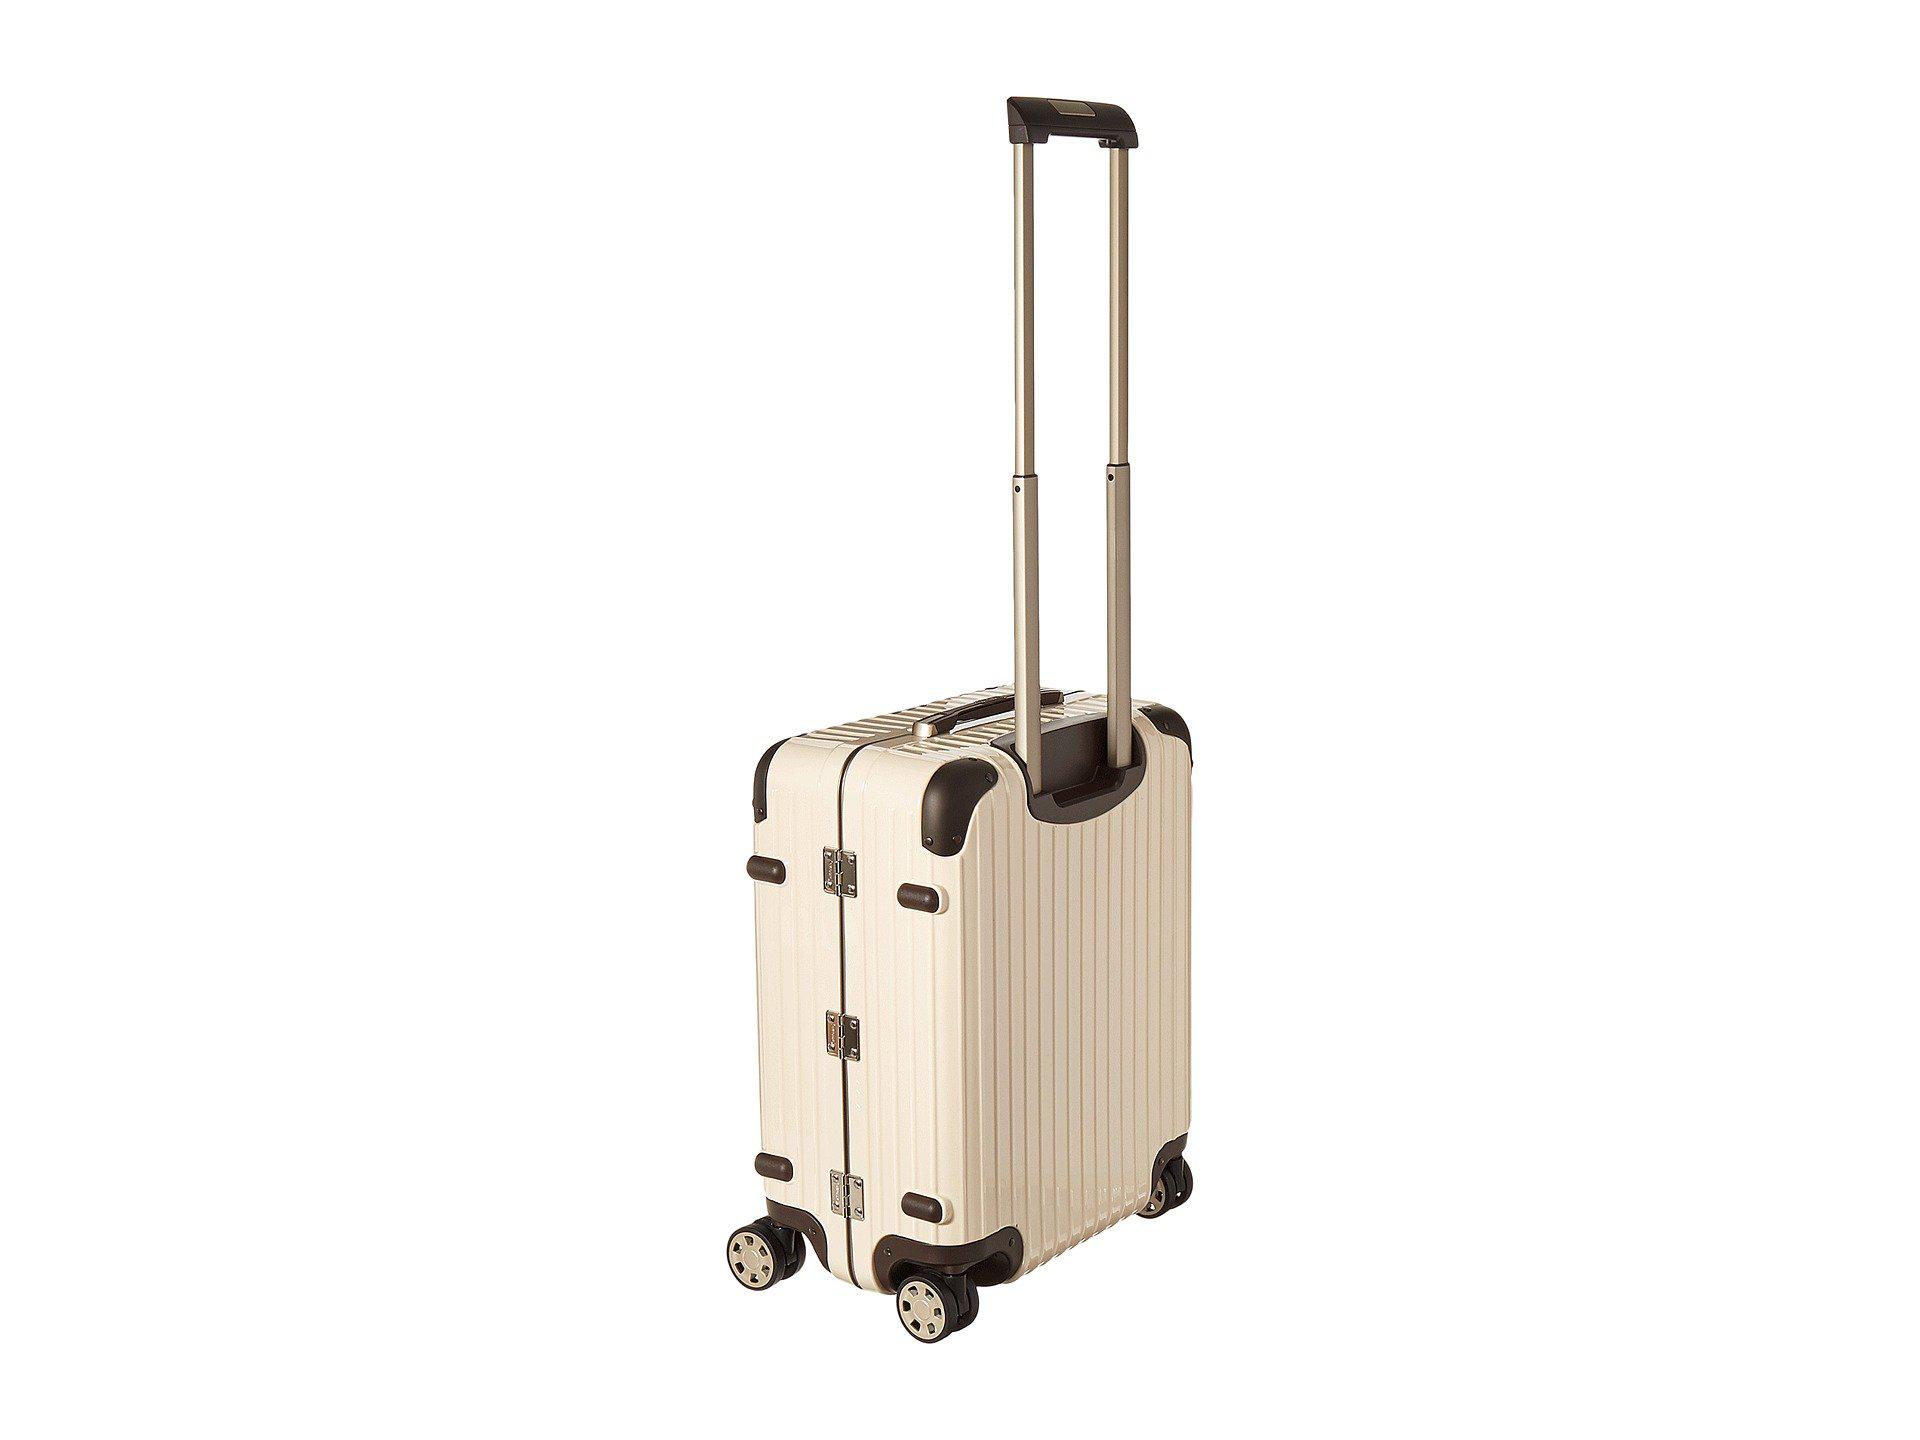 RIMOWA Limbo - Cabin Multiwheel(r) (creme White) Luggage for Men